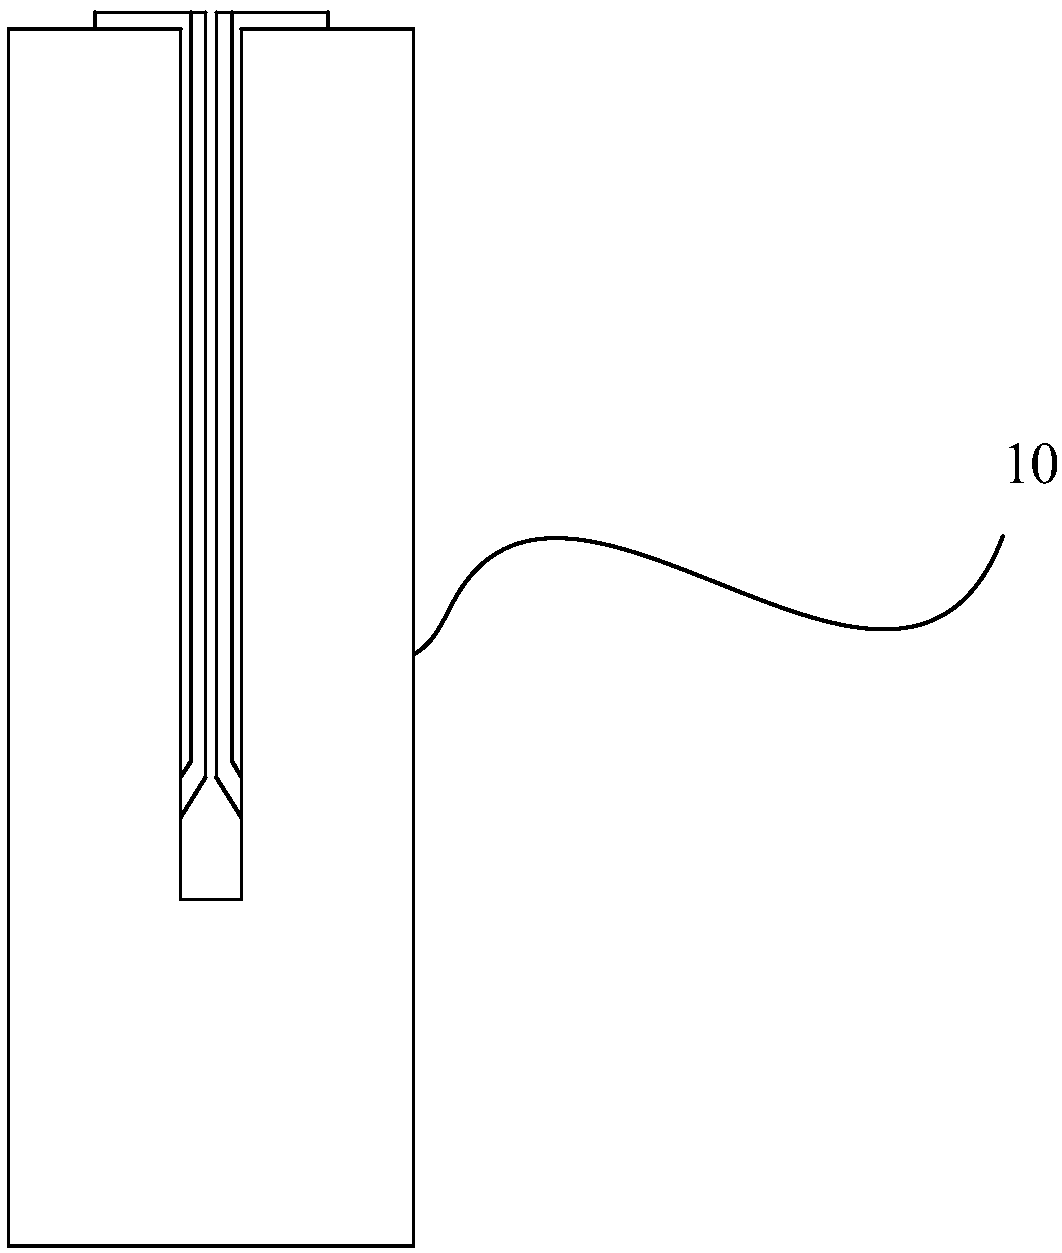 Bicuspid valve clip